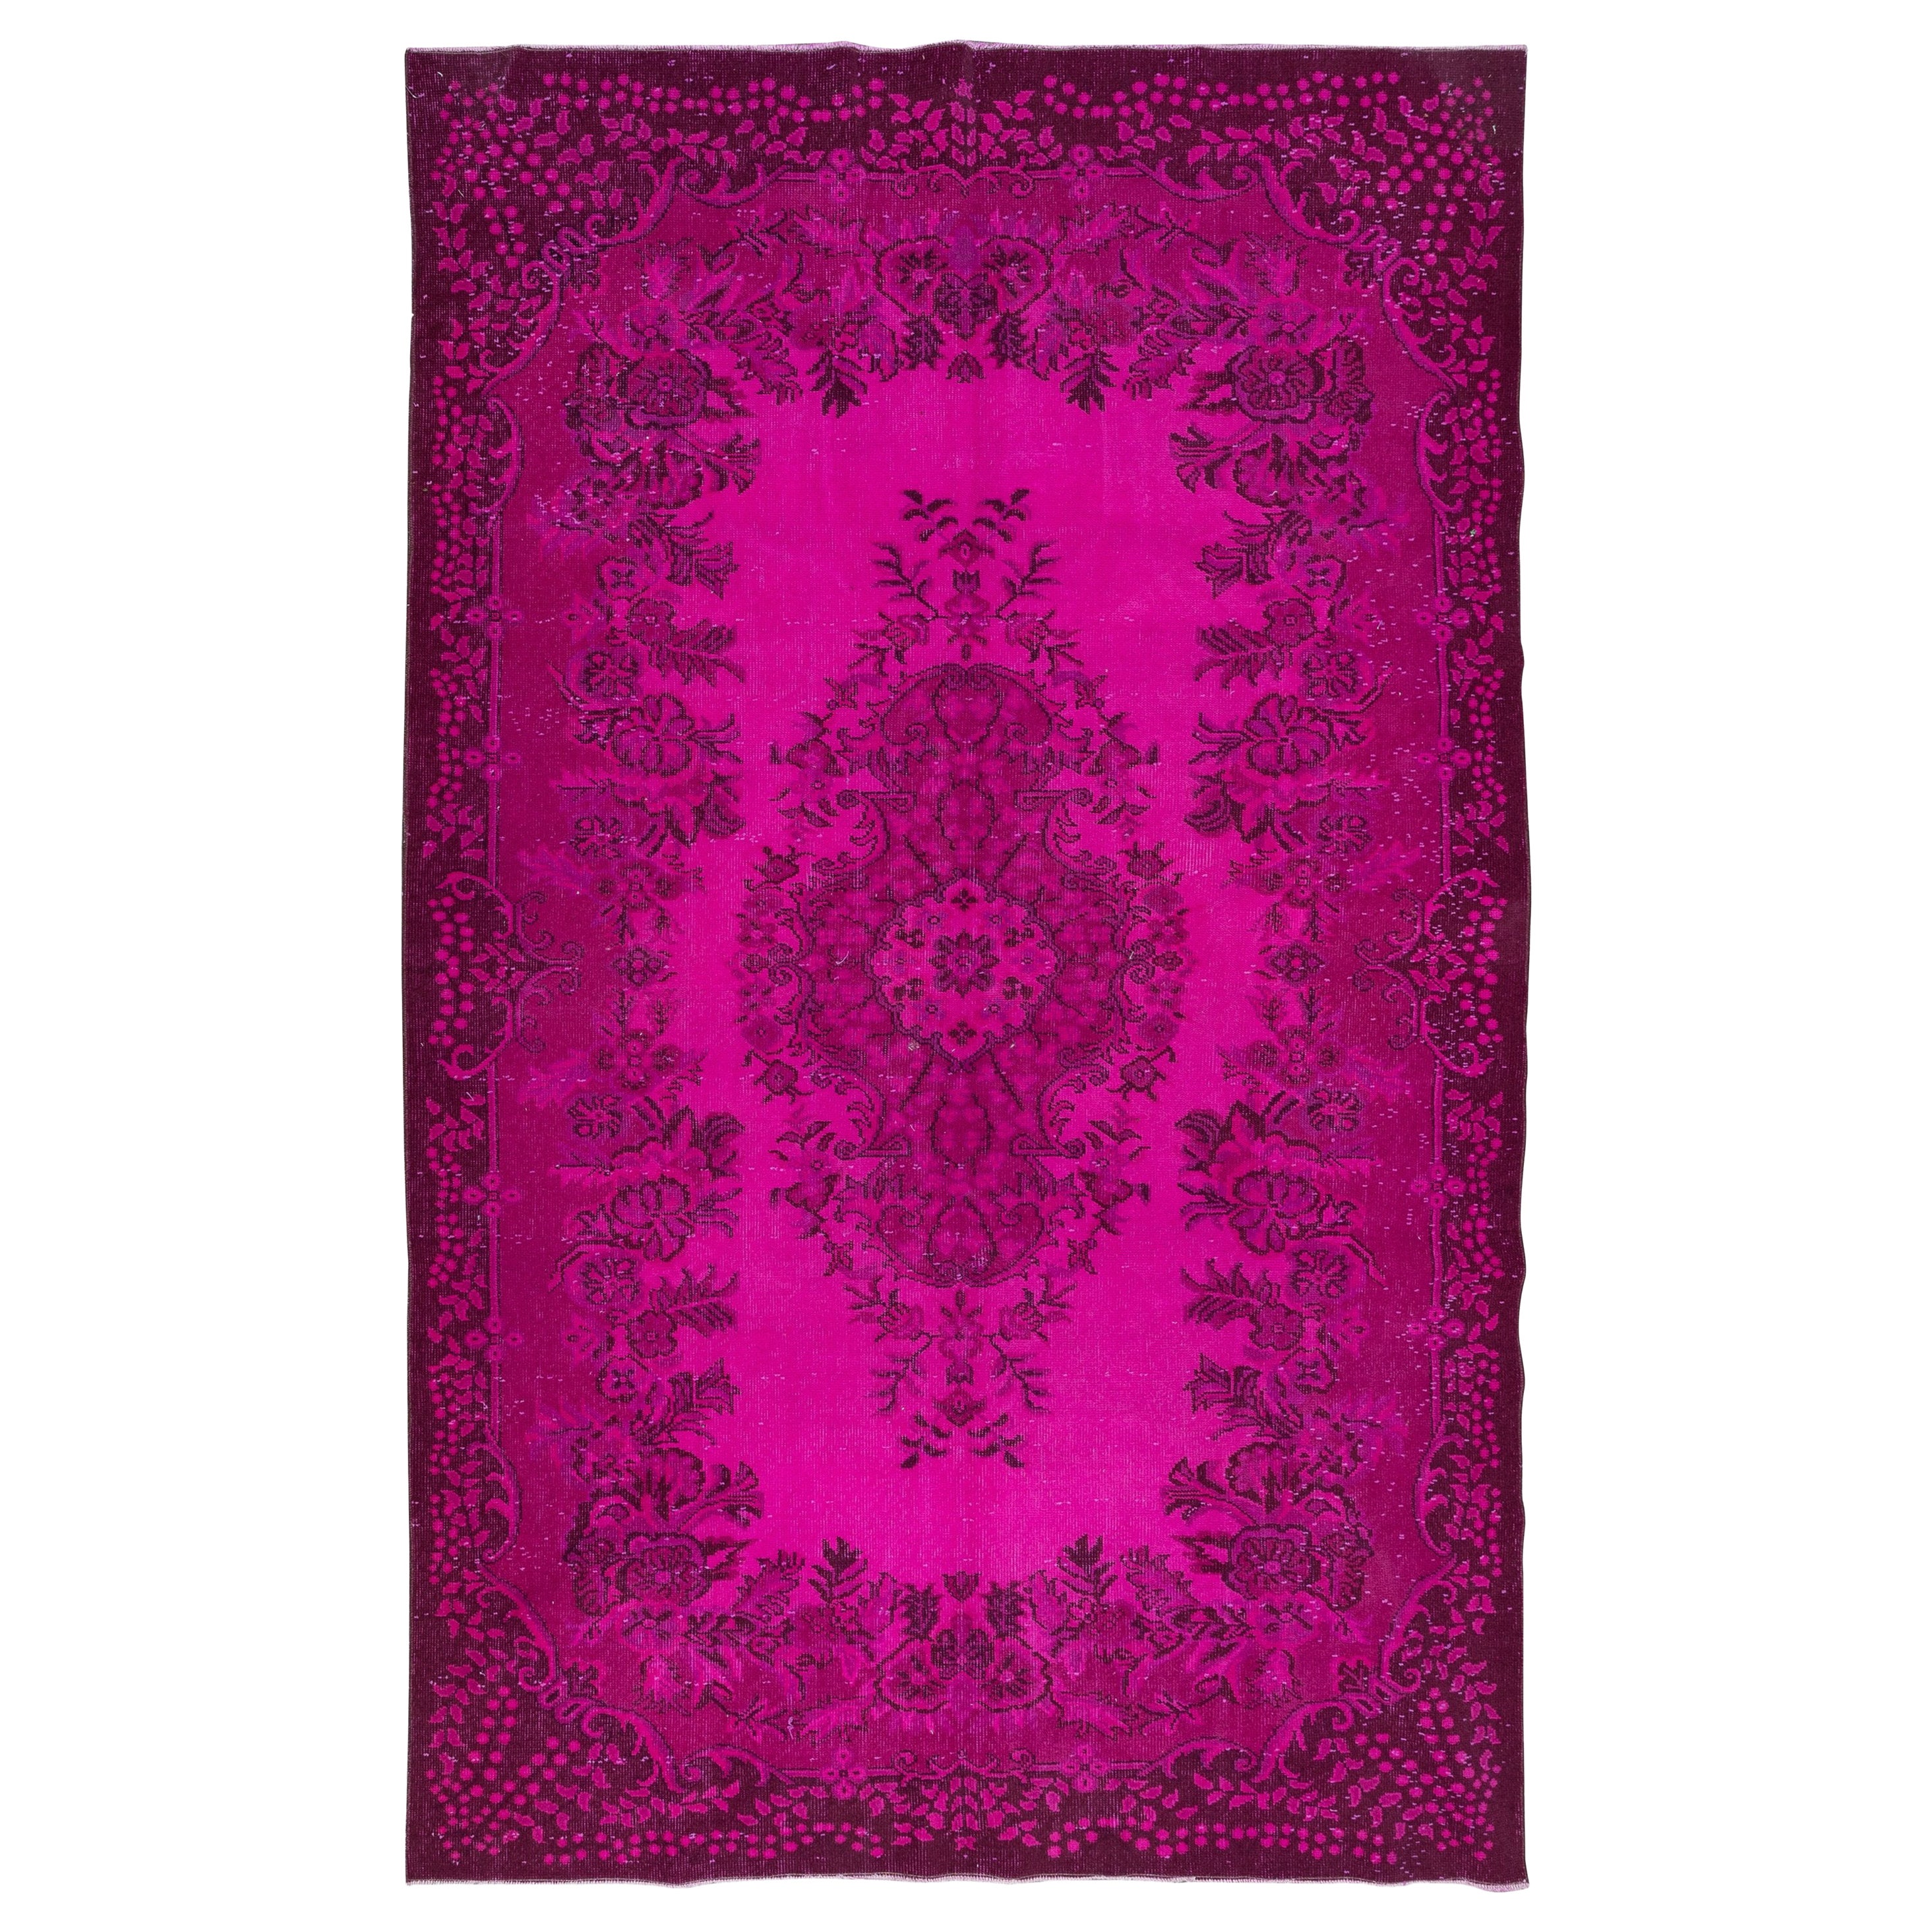 Fantastischer handgefertigter türkischer Teppich 6.2x10 Ft mit Medaillon-Design und heißem rosafarbenem Feld